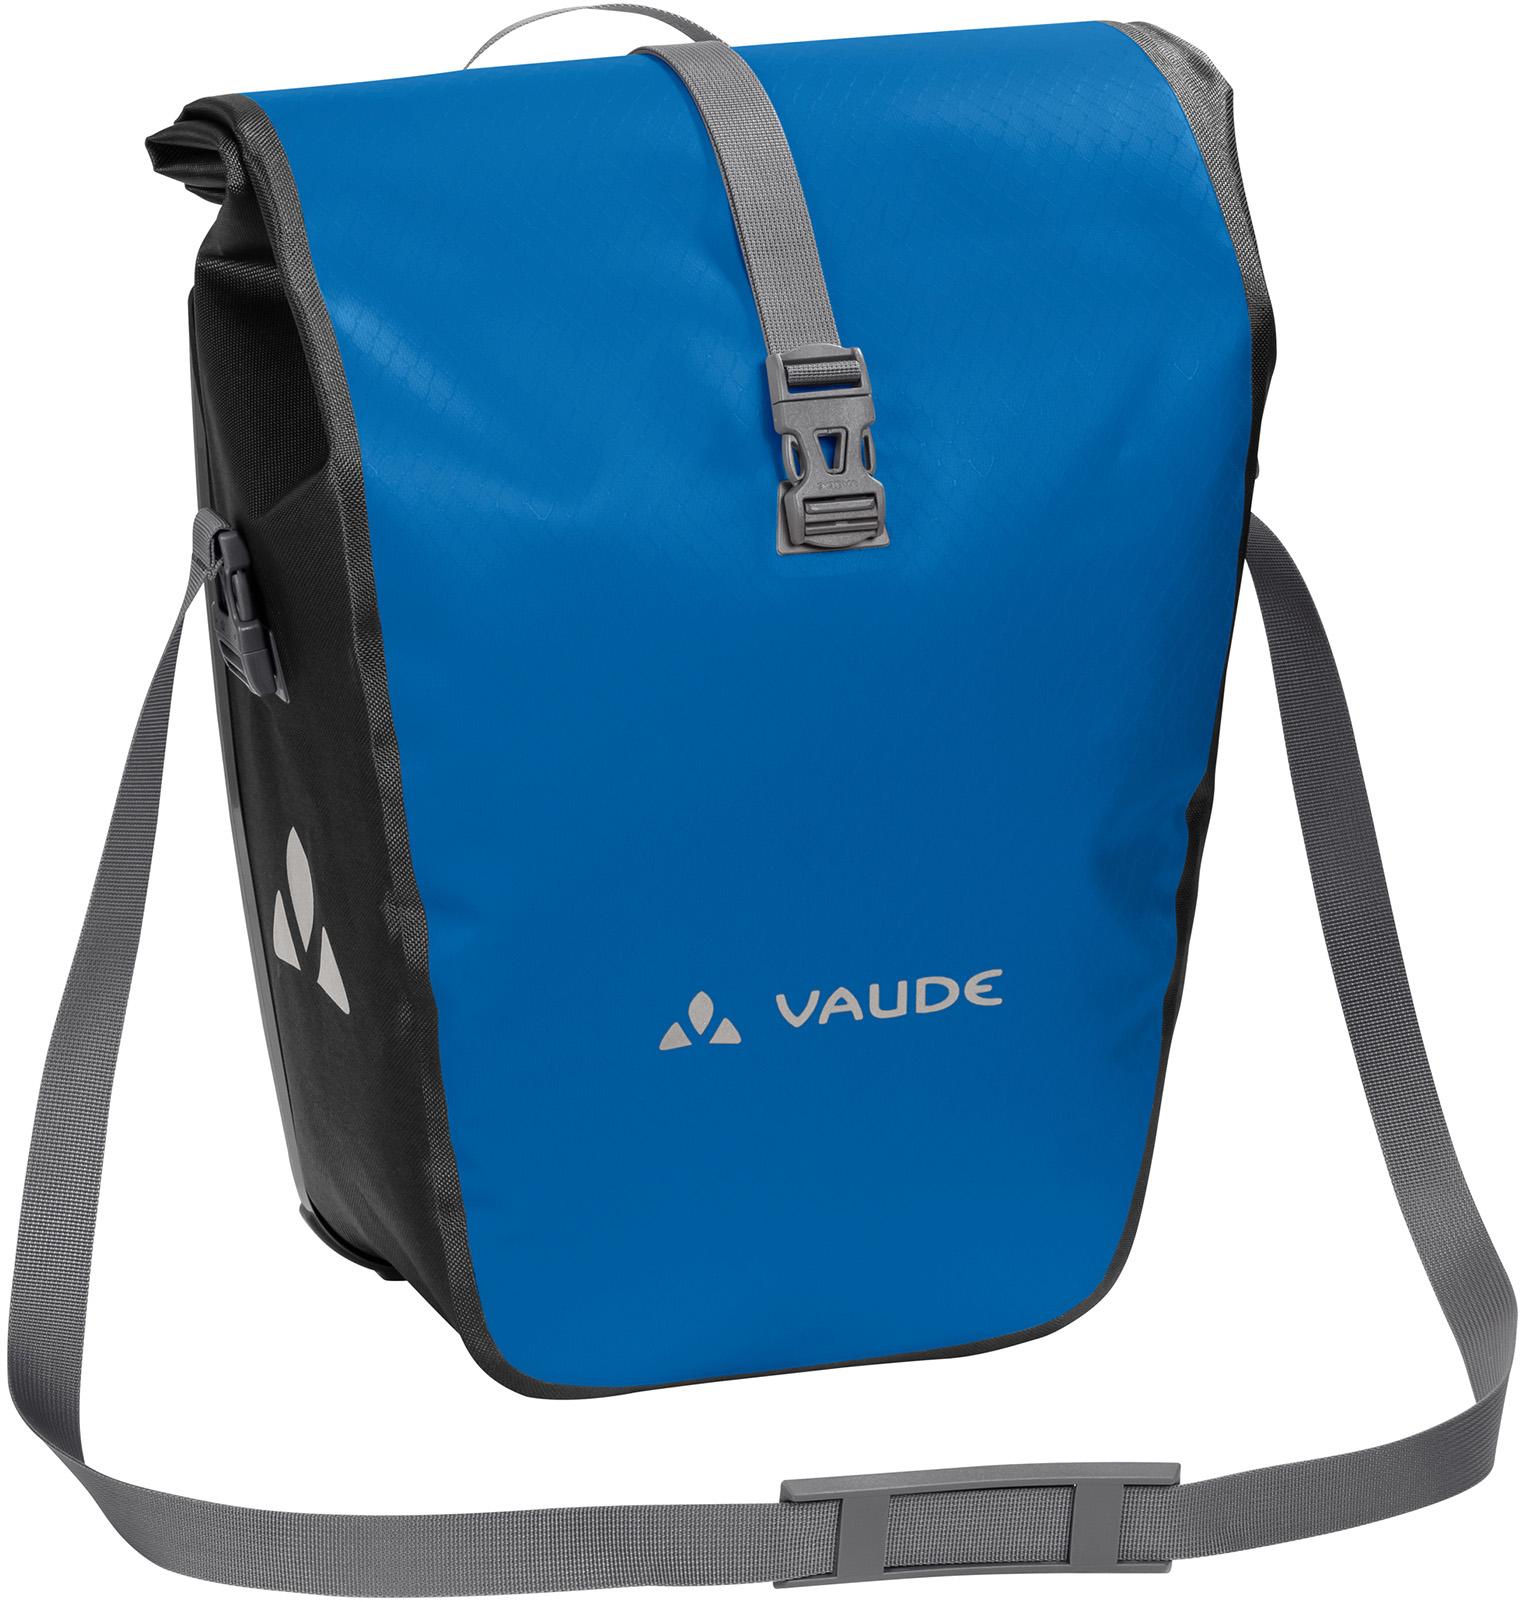 Vaude Aqua Back Rear Pannier Bike Bag - Blue